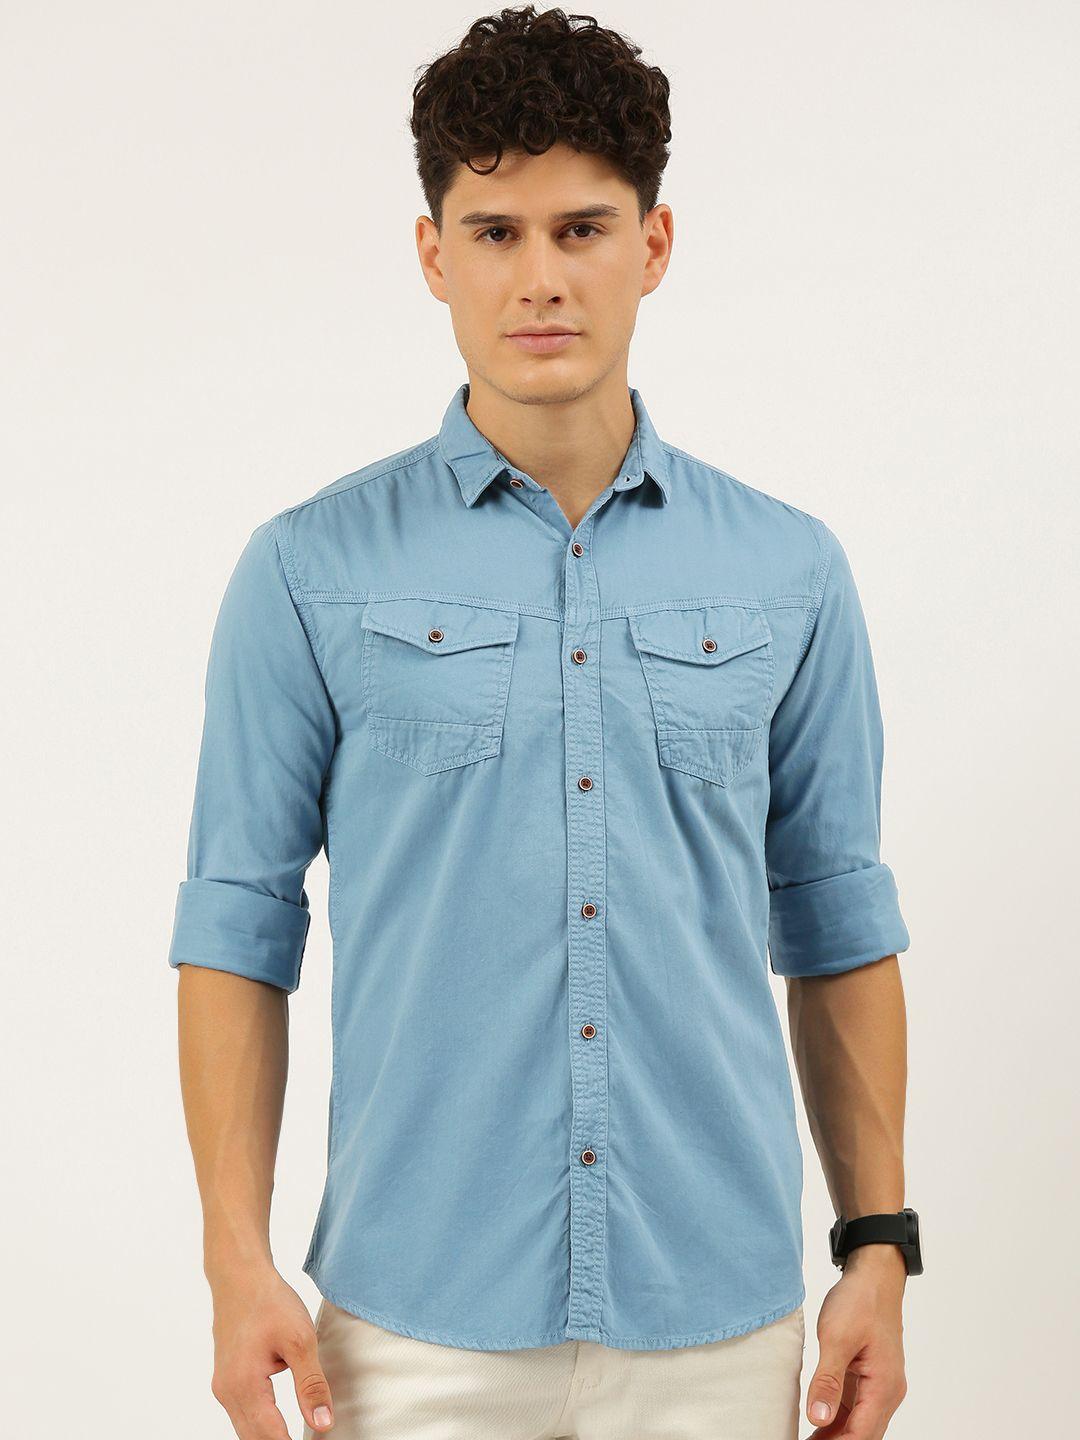 ivoc-men-blue-pure-cotton-standard-slim-fit-casual-shirt